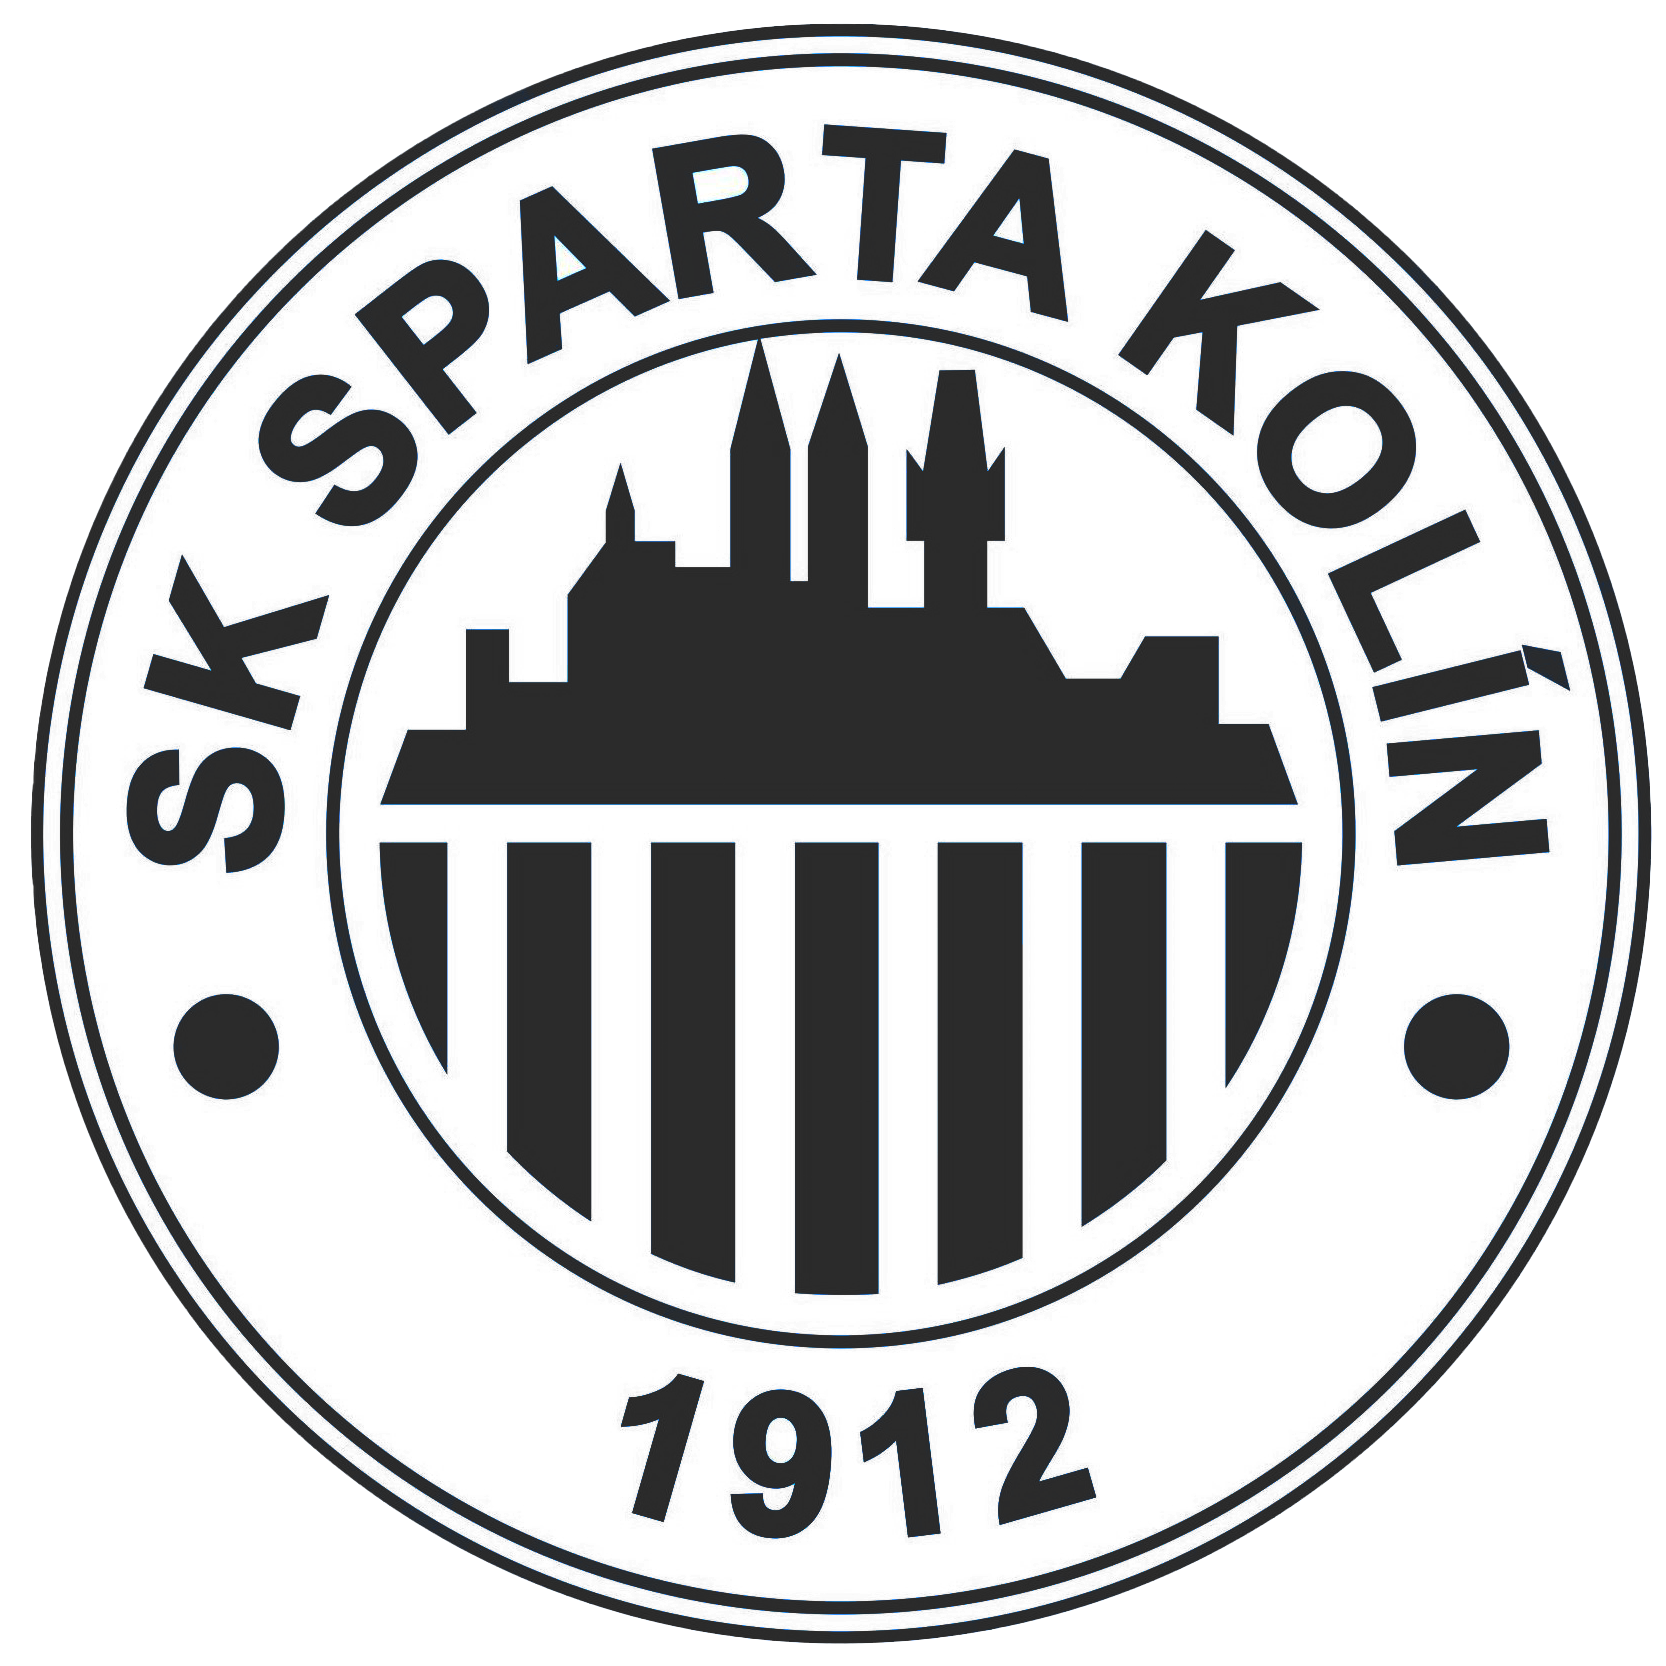 SK Sparta Koln